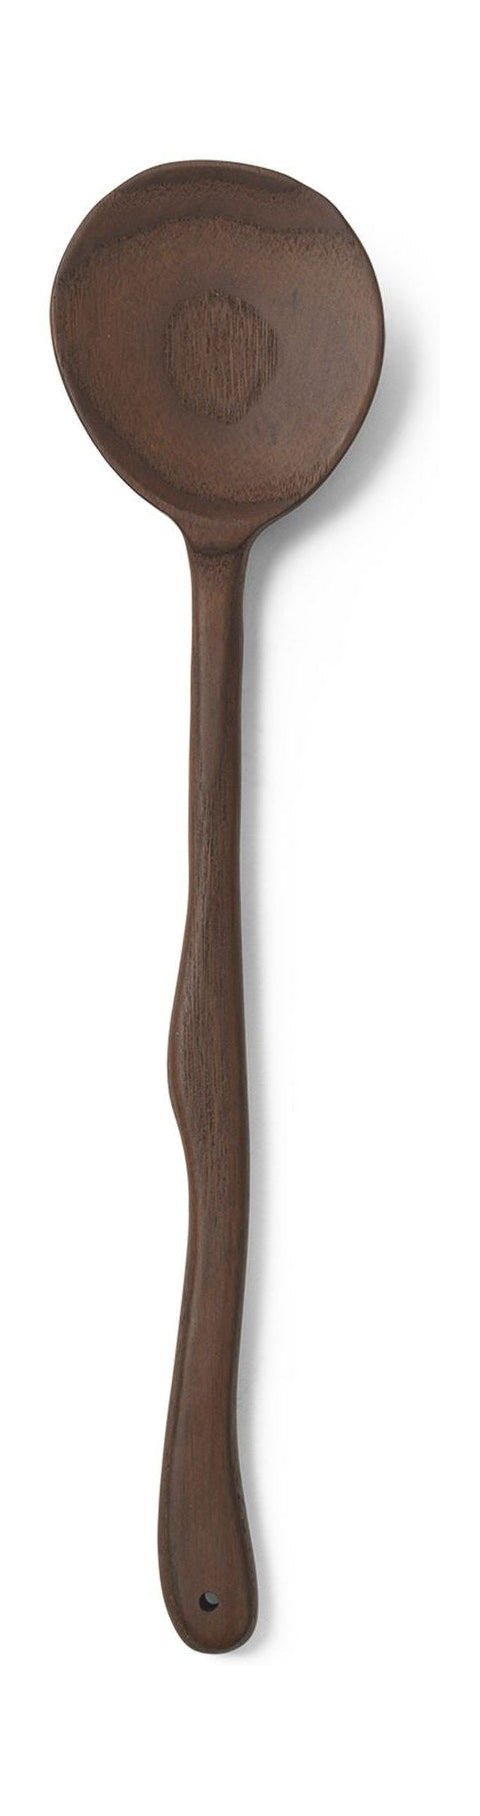 Ferm Living Slingrande sked, 30 cm, mörkbrun